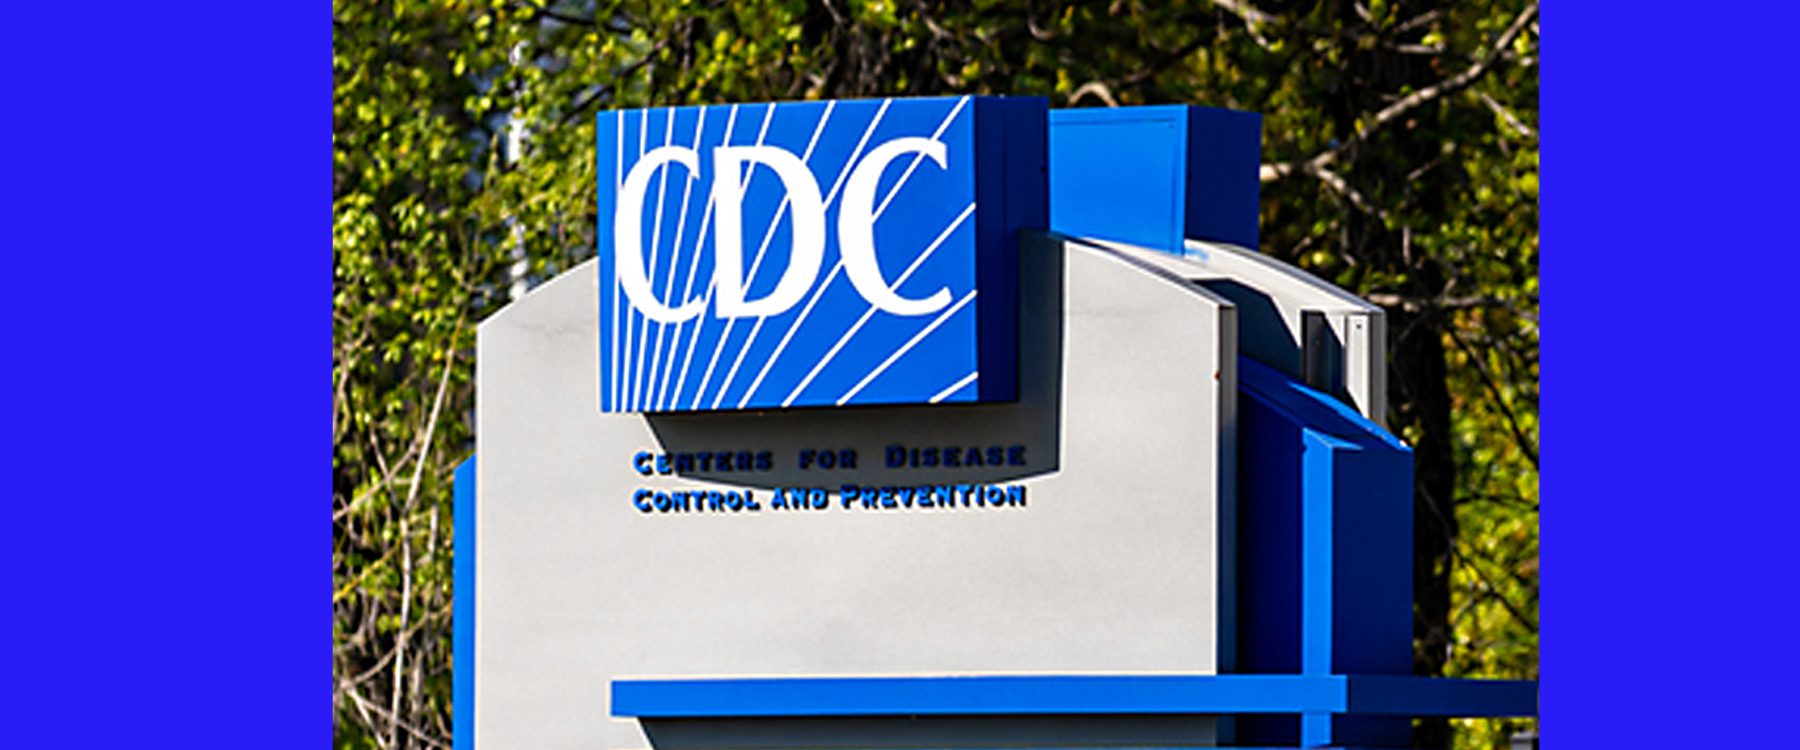 CDC ed 1 banner